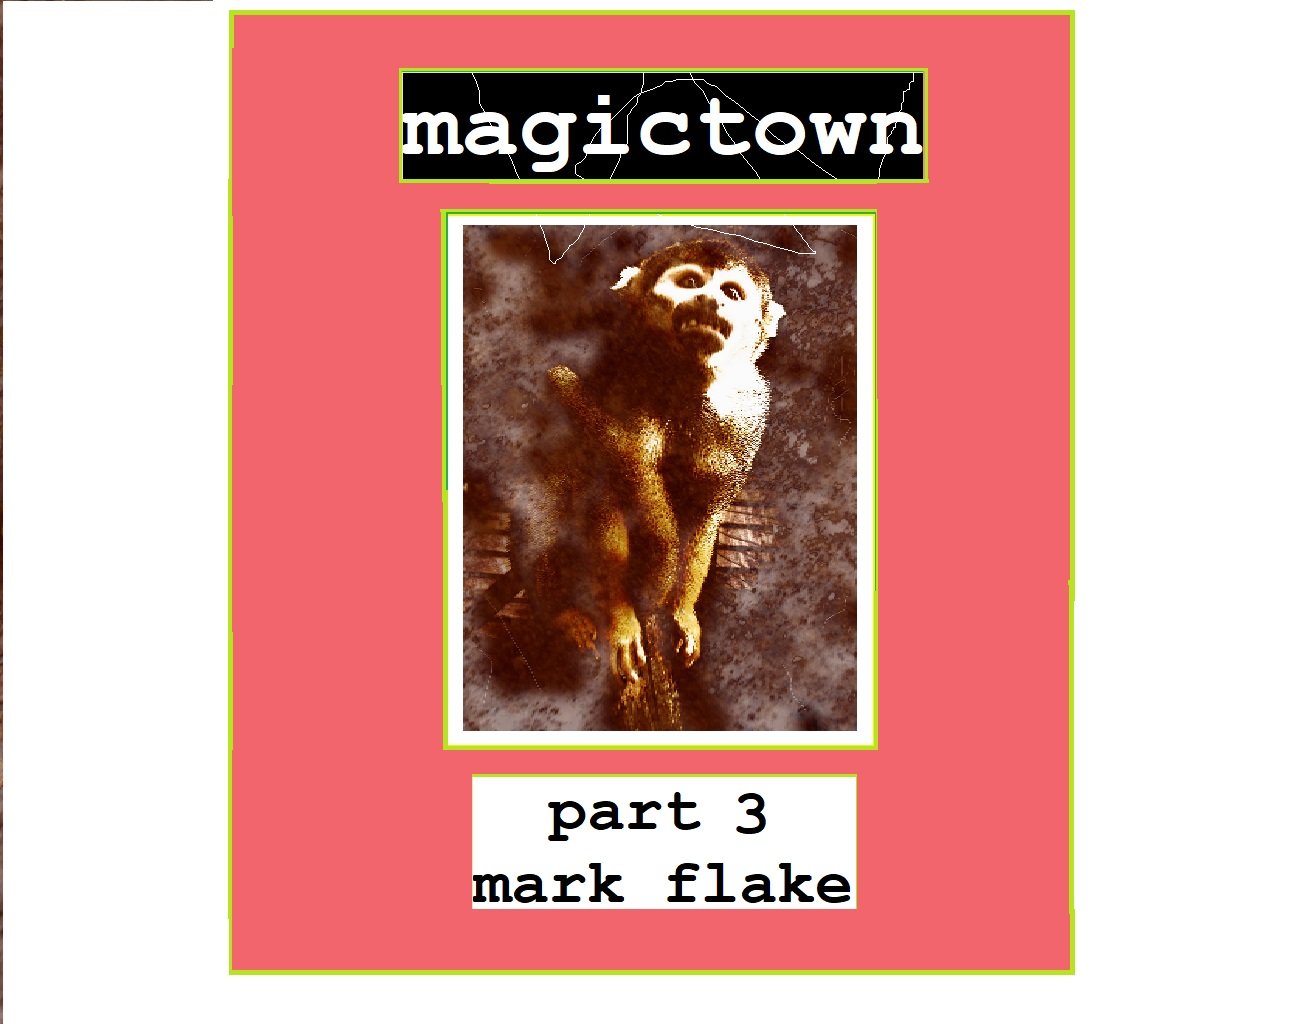 magictown pt. 3